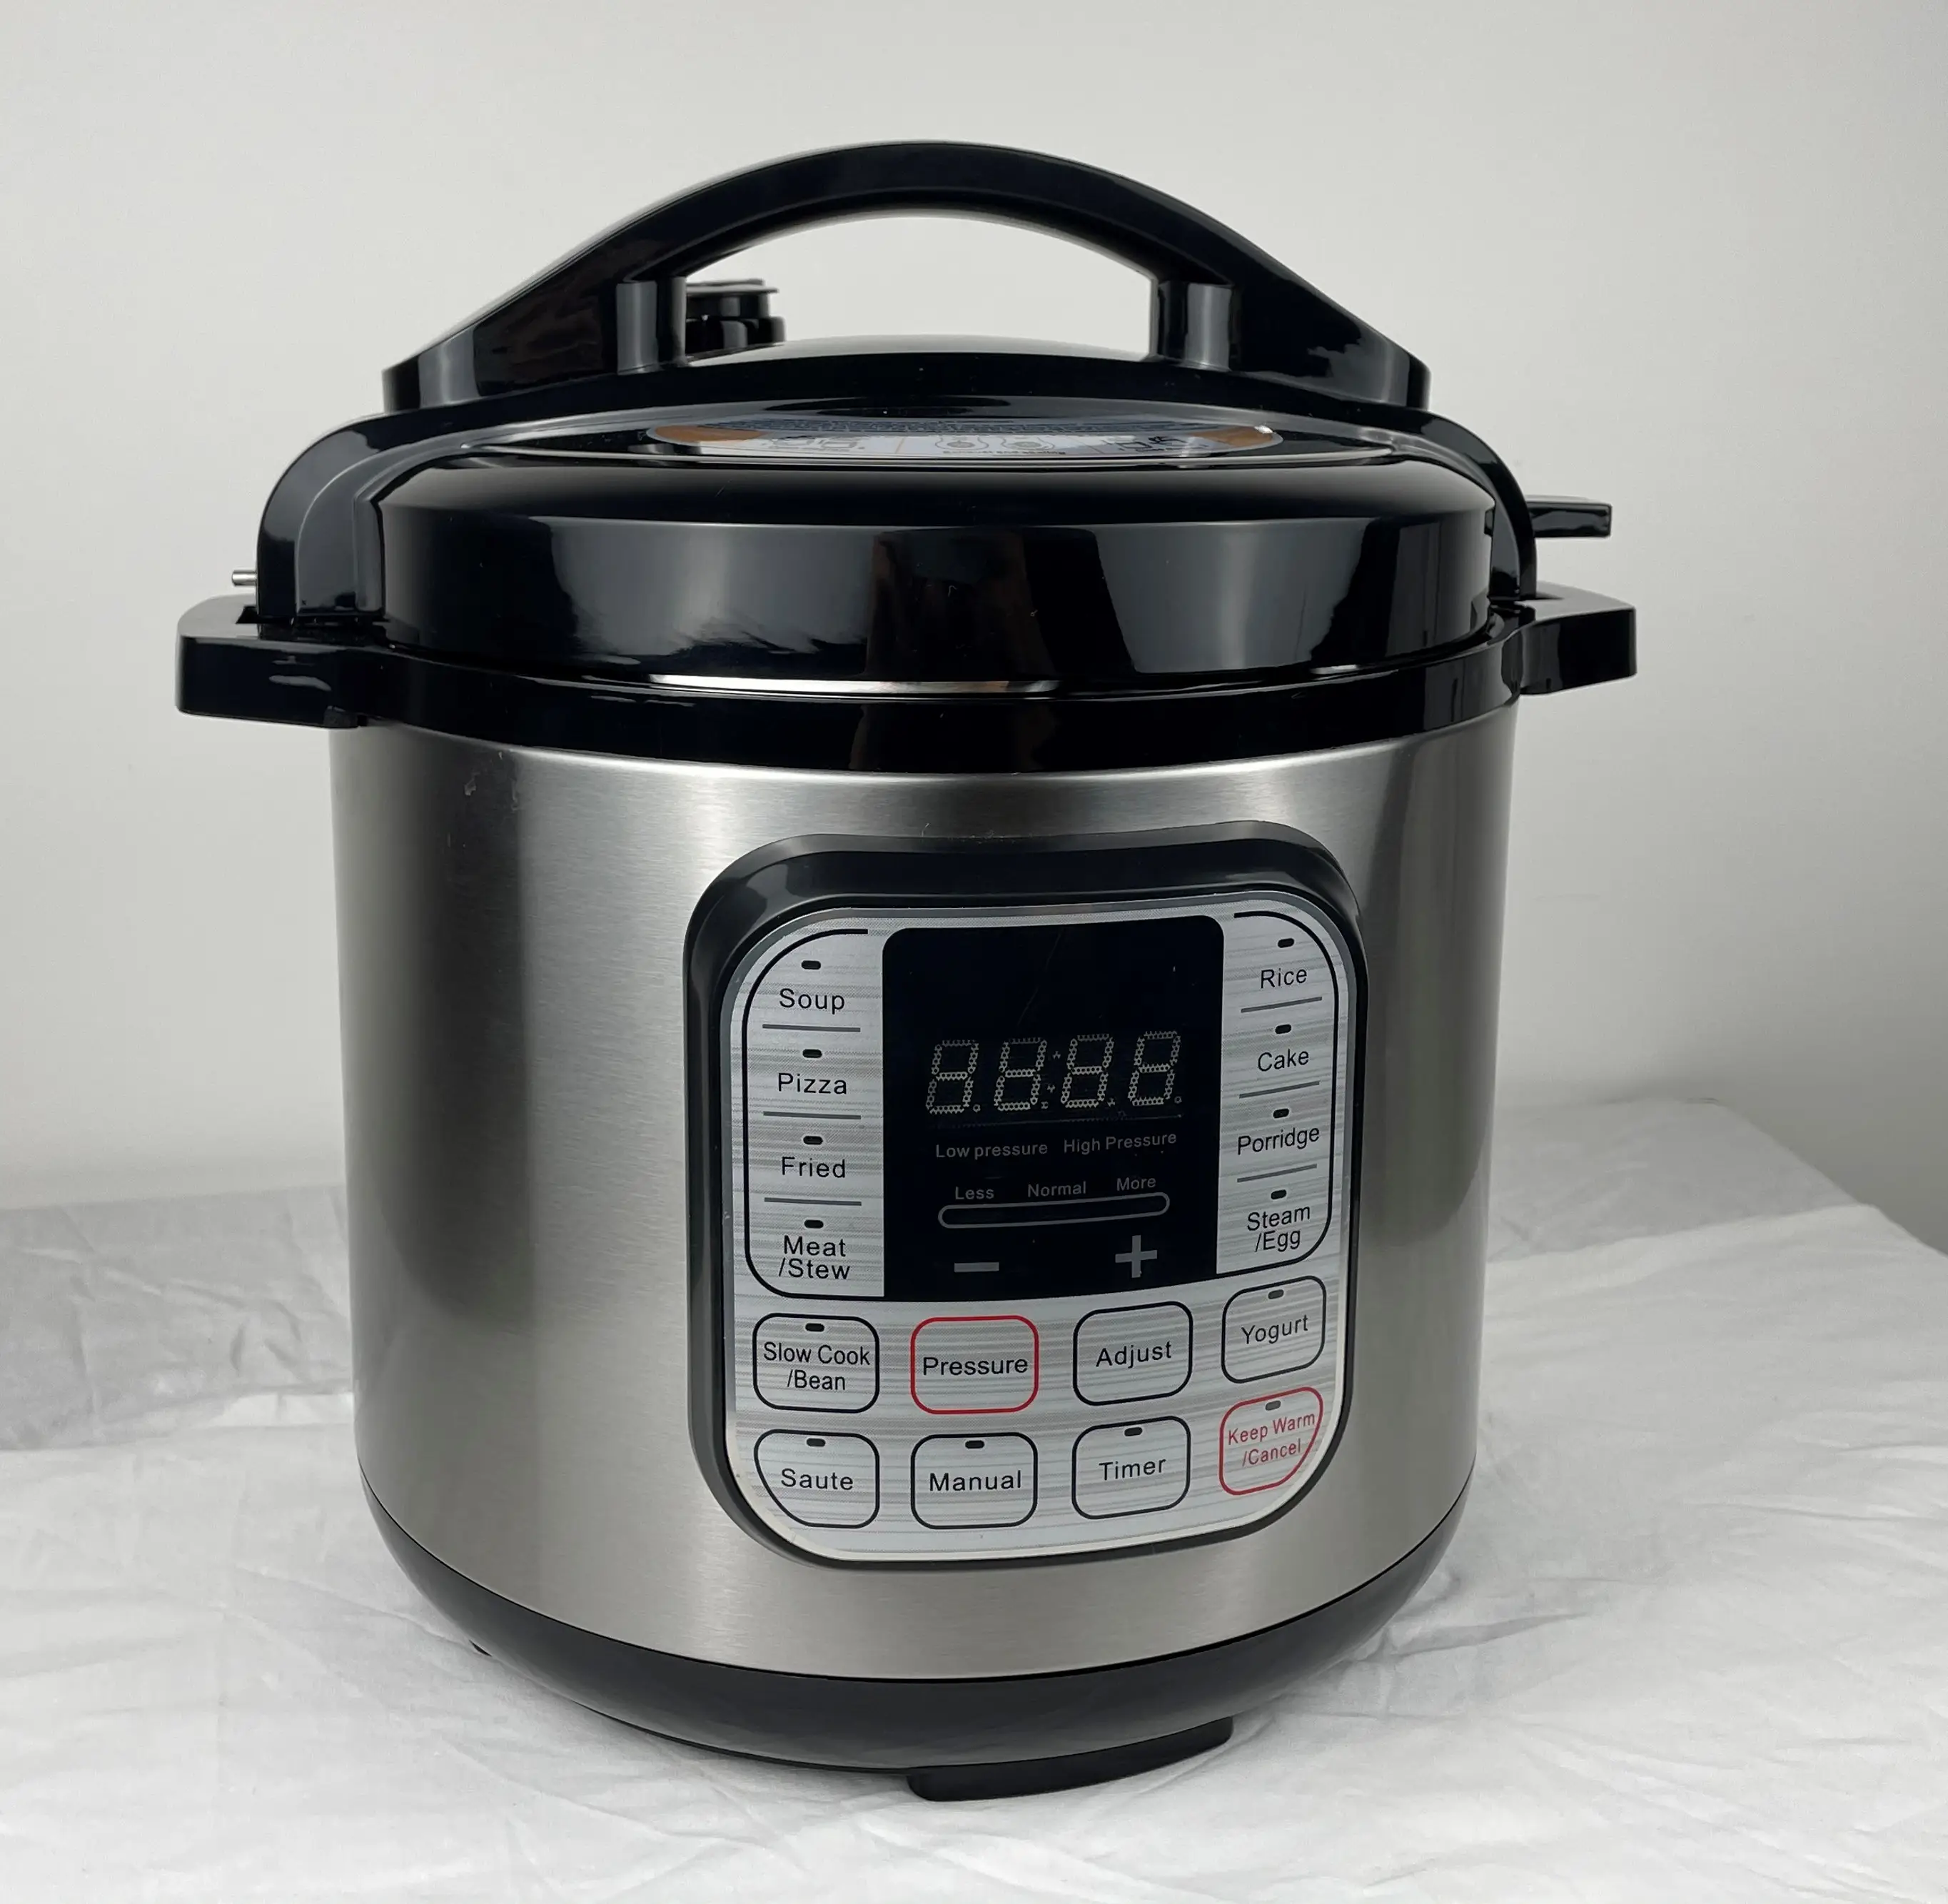 Электрическая скороварка из нержавеющей стали для приготовления пищи, включая паровую рисоварку